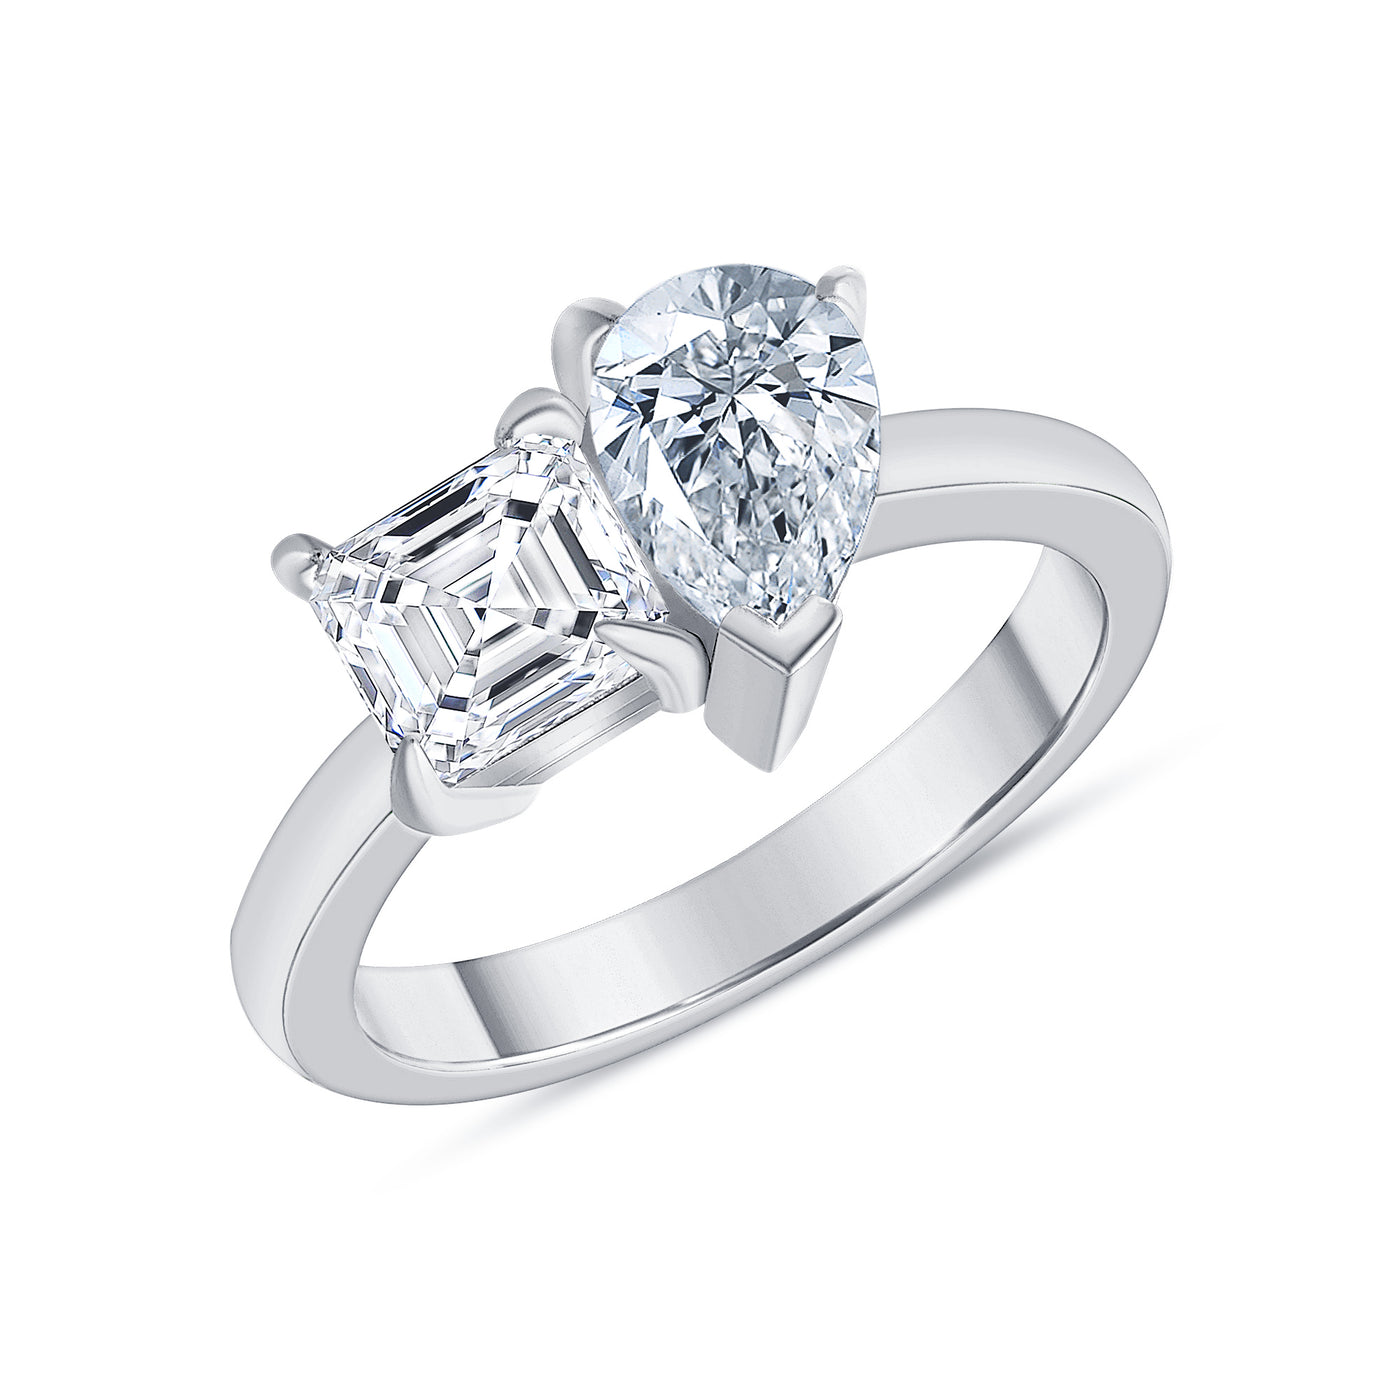 Toi et Moi Asscher and Pear Cut Diamond Engagement Ring 1.00 Carat